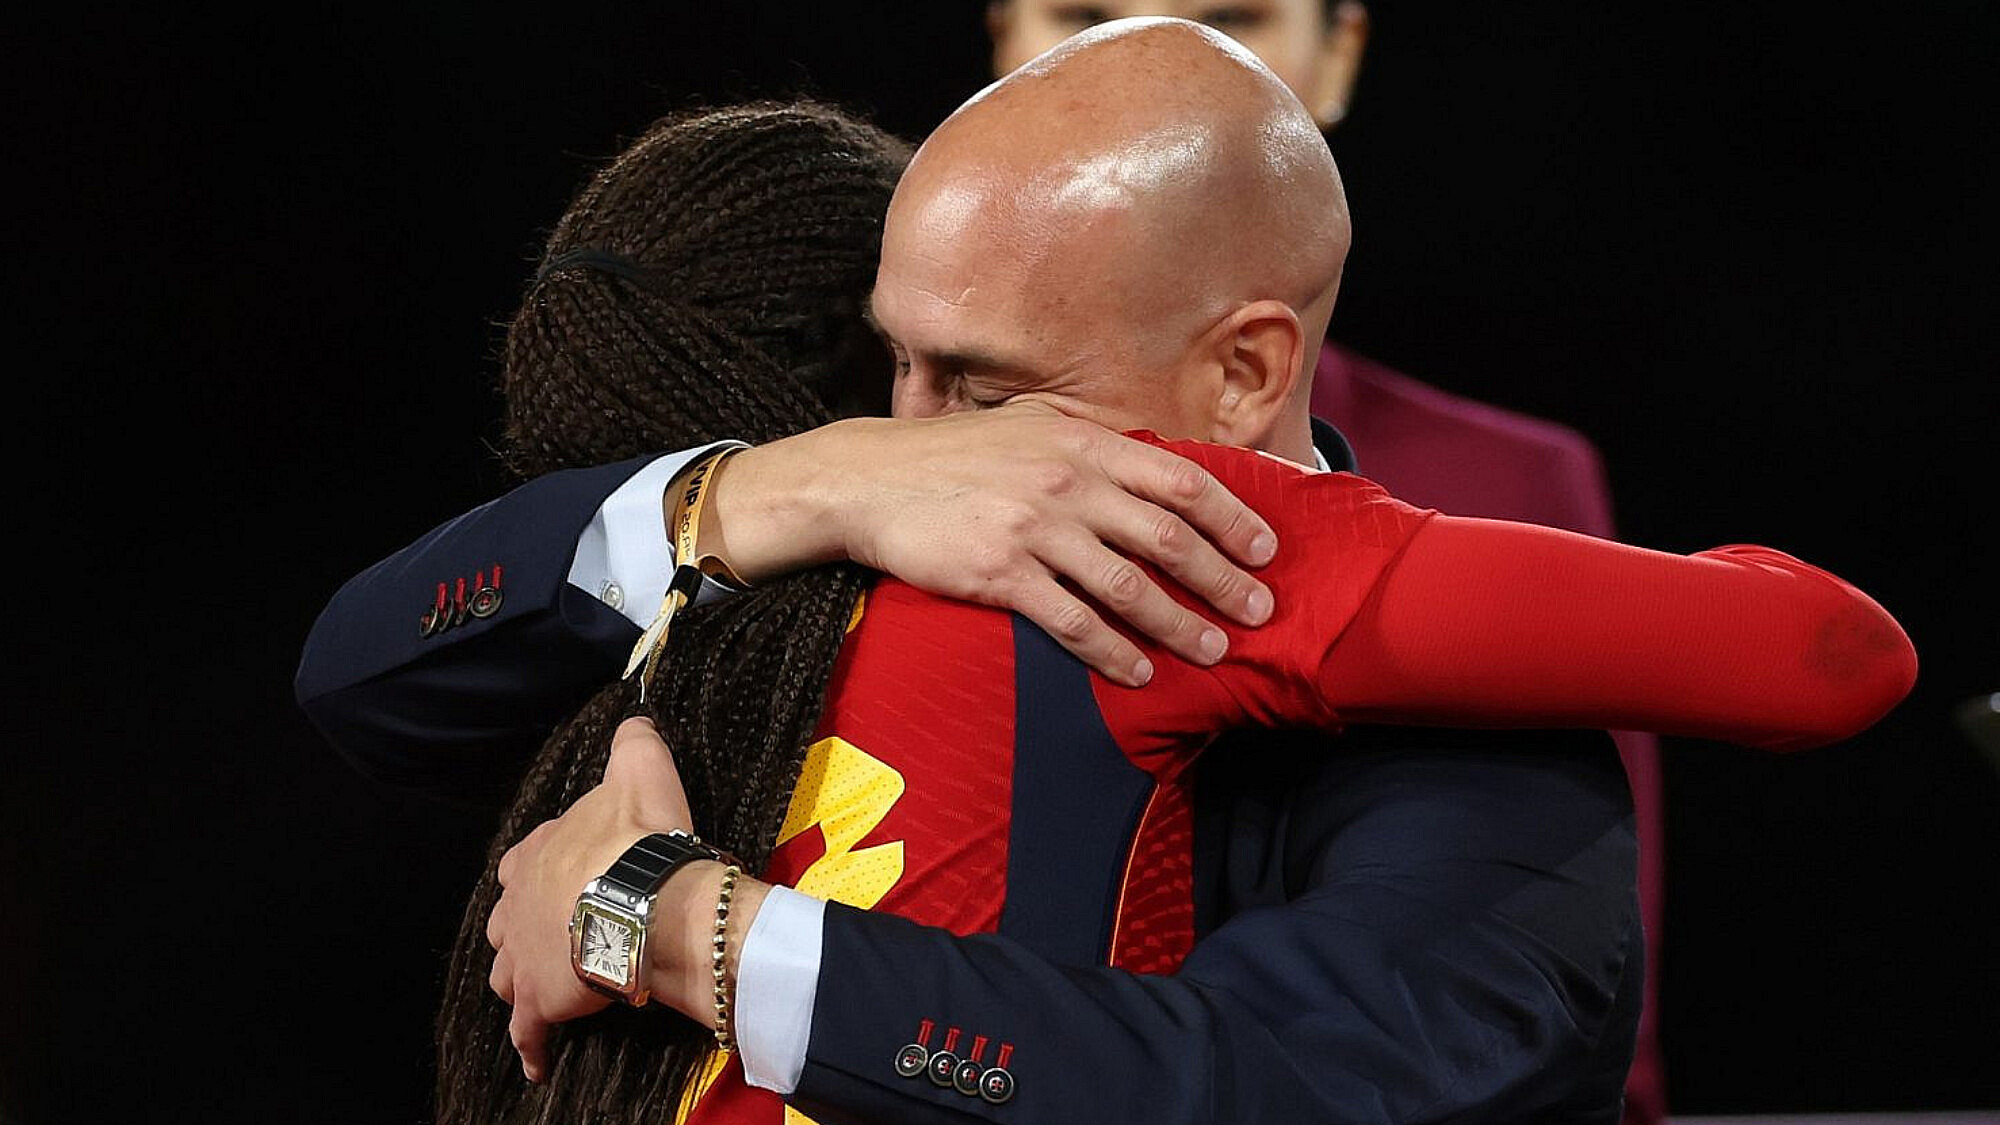 נשיא ההתאחדות הספרדית לואיס רוביאלס מחבק ומנשק בפה בכוח את כוכבת הנבחרת ג'ני הרמוסו | צילום: Gettyimages